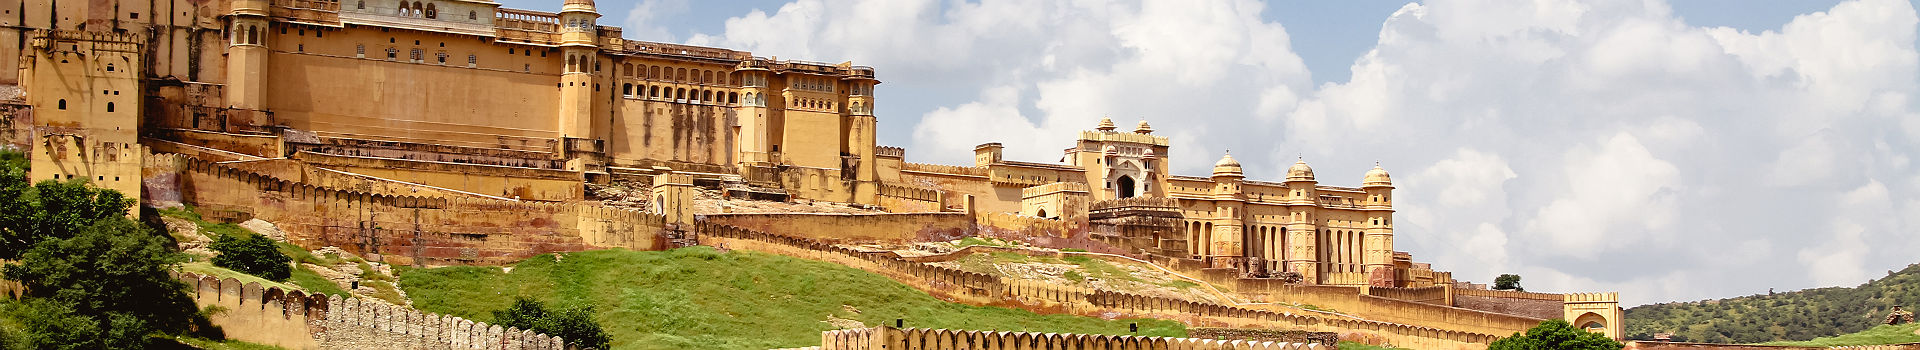 Amber Fort à Jaipur - Inde